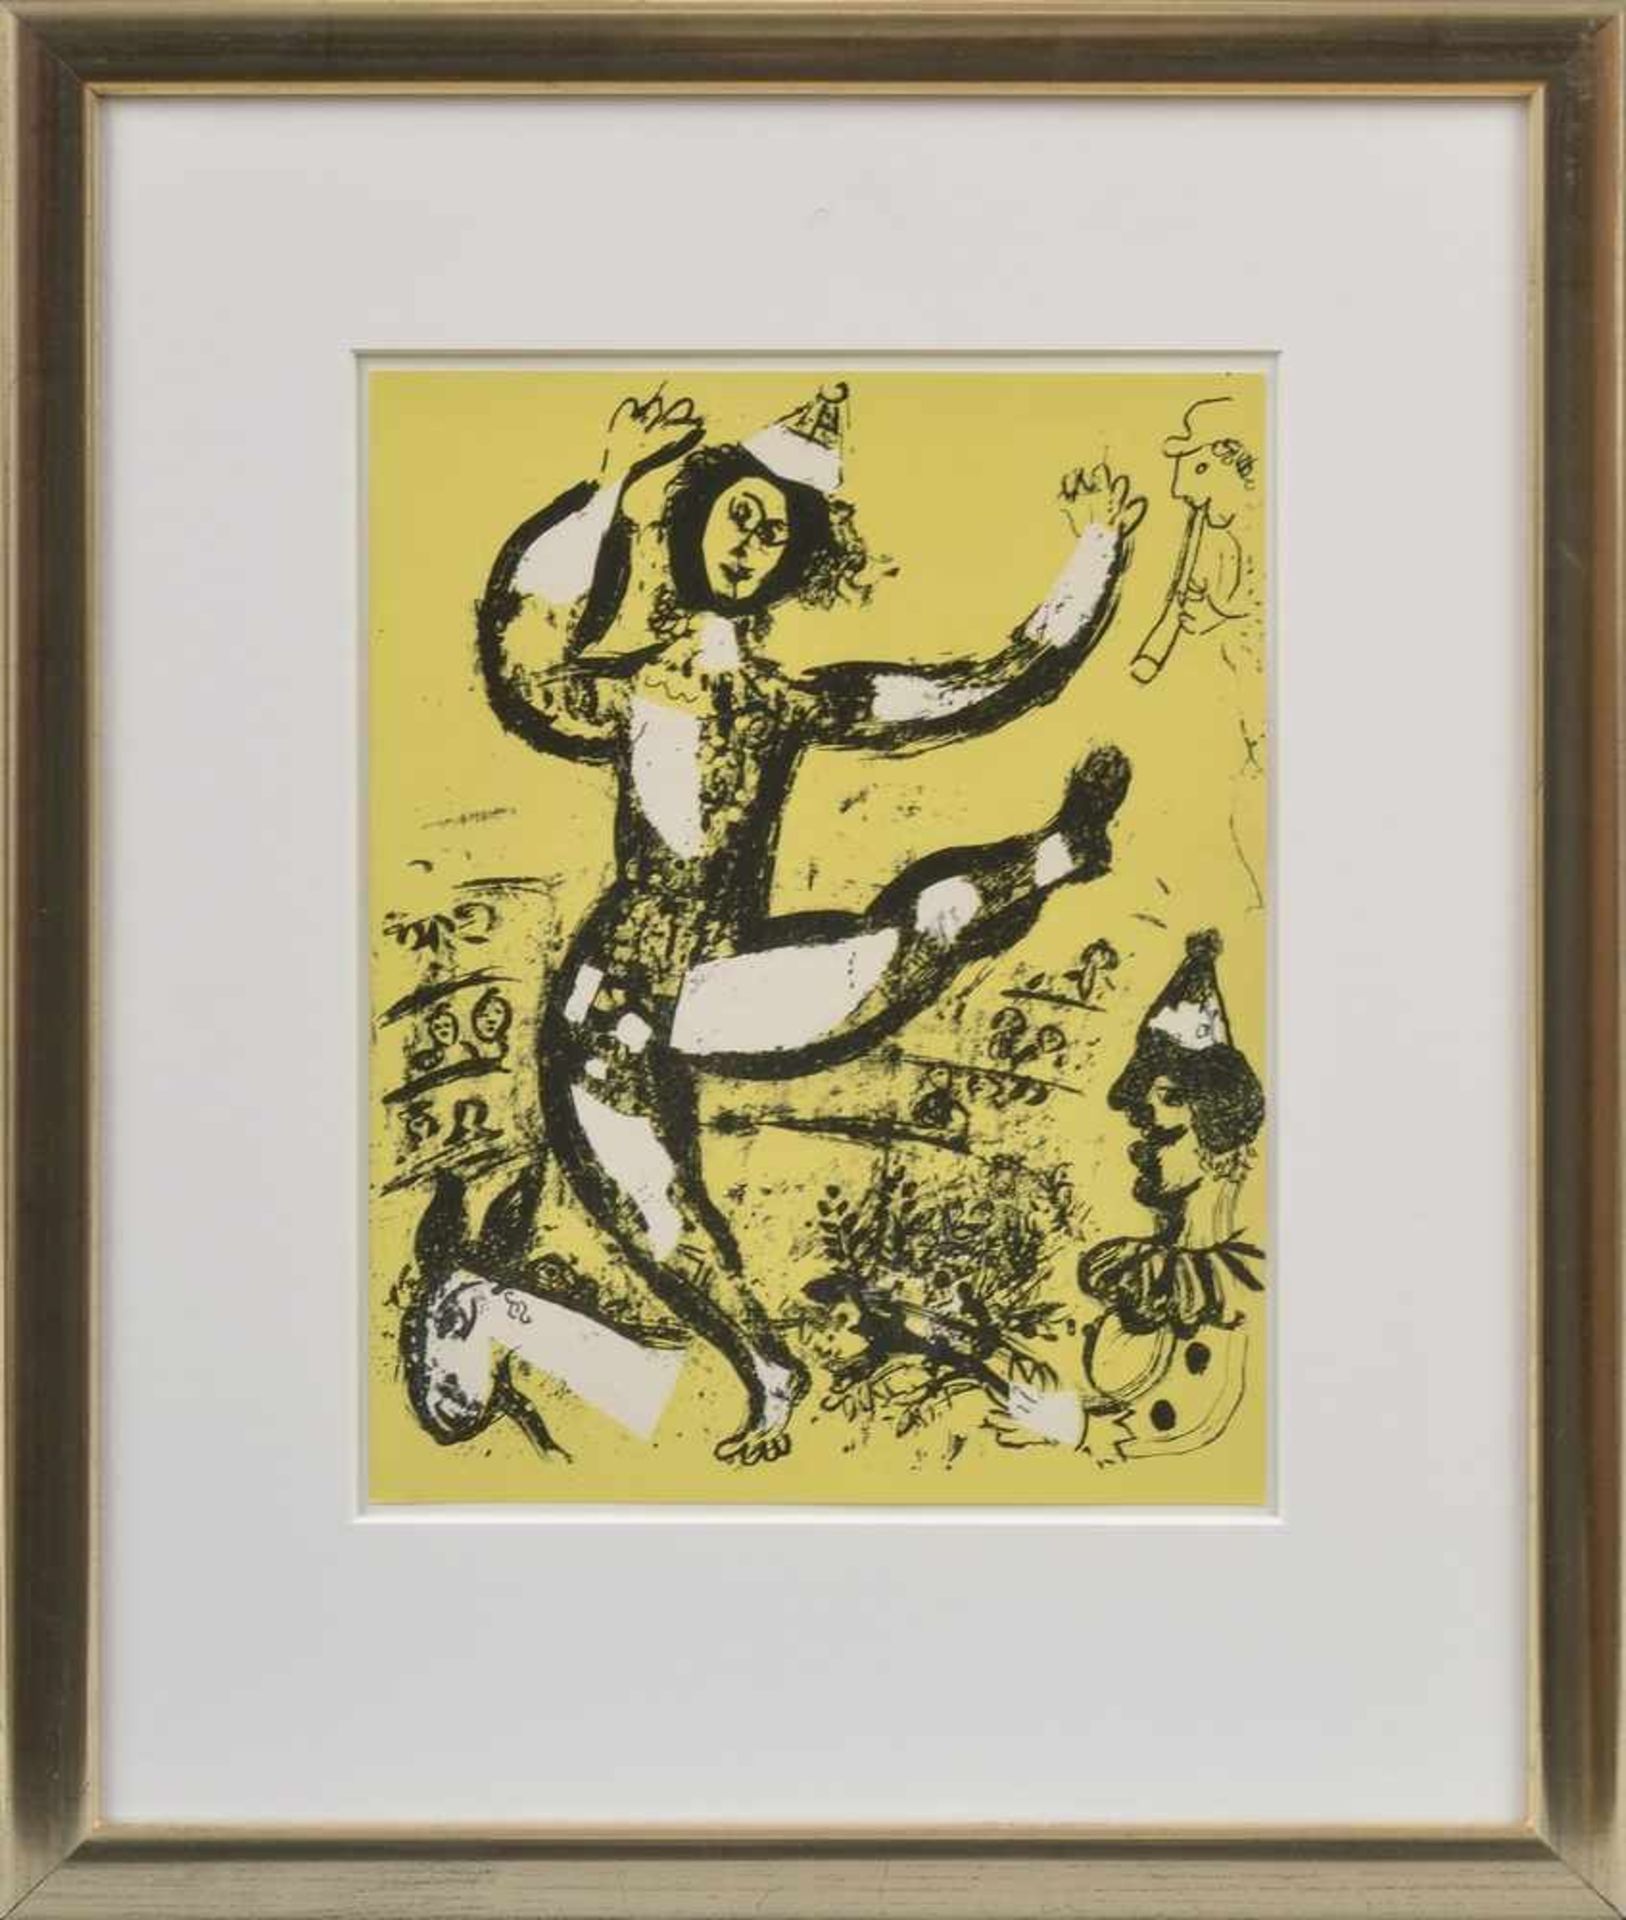 Chagall, Marc (1887-1985) "Cirque" 1960, Farblithographie, 32x24cm (m.R. 54,5x44cm) - Bild 2 aus 2